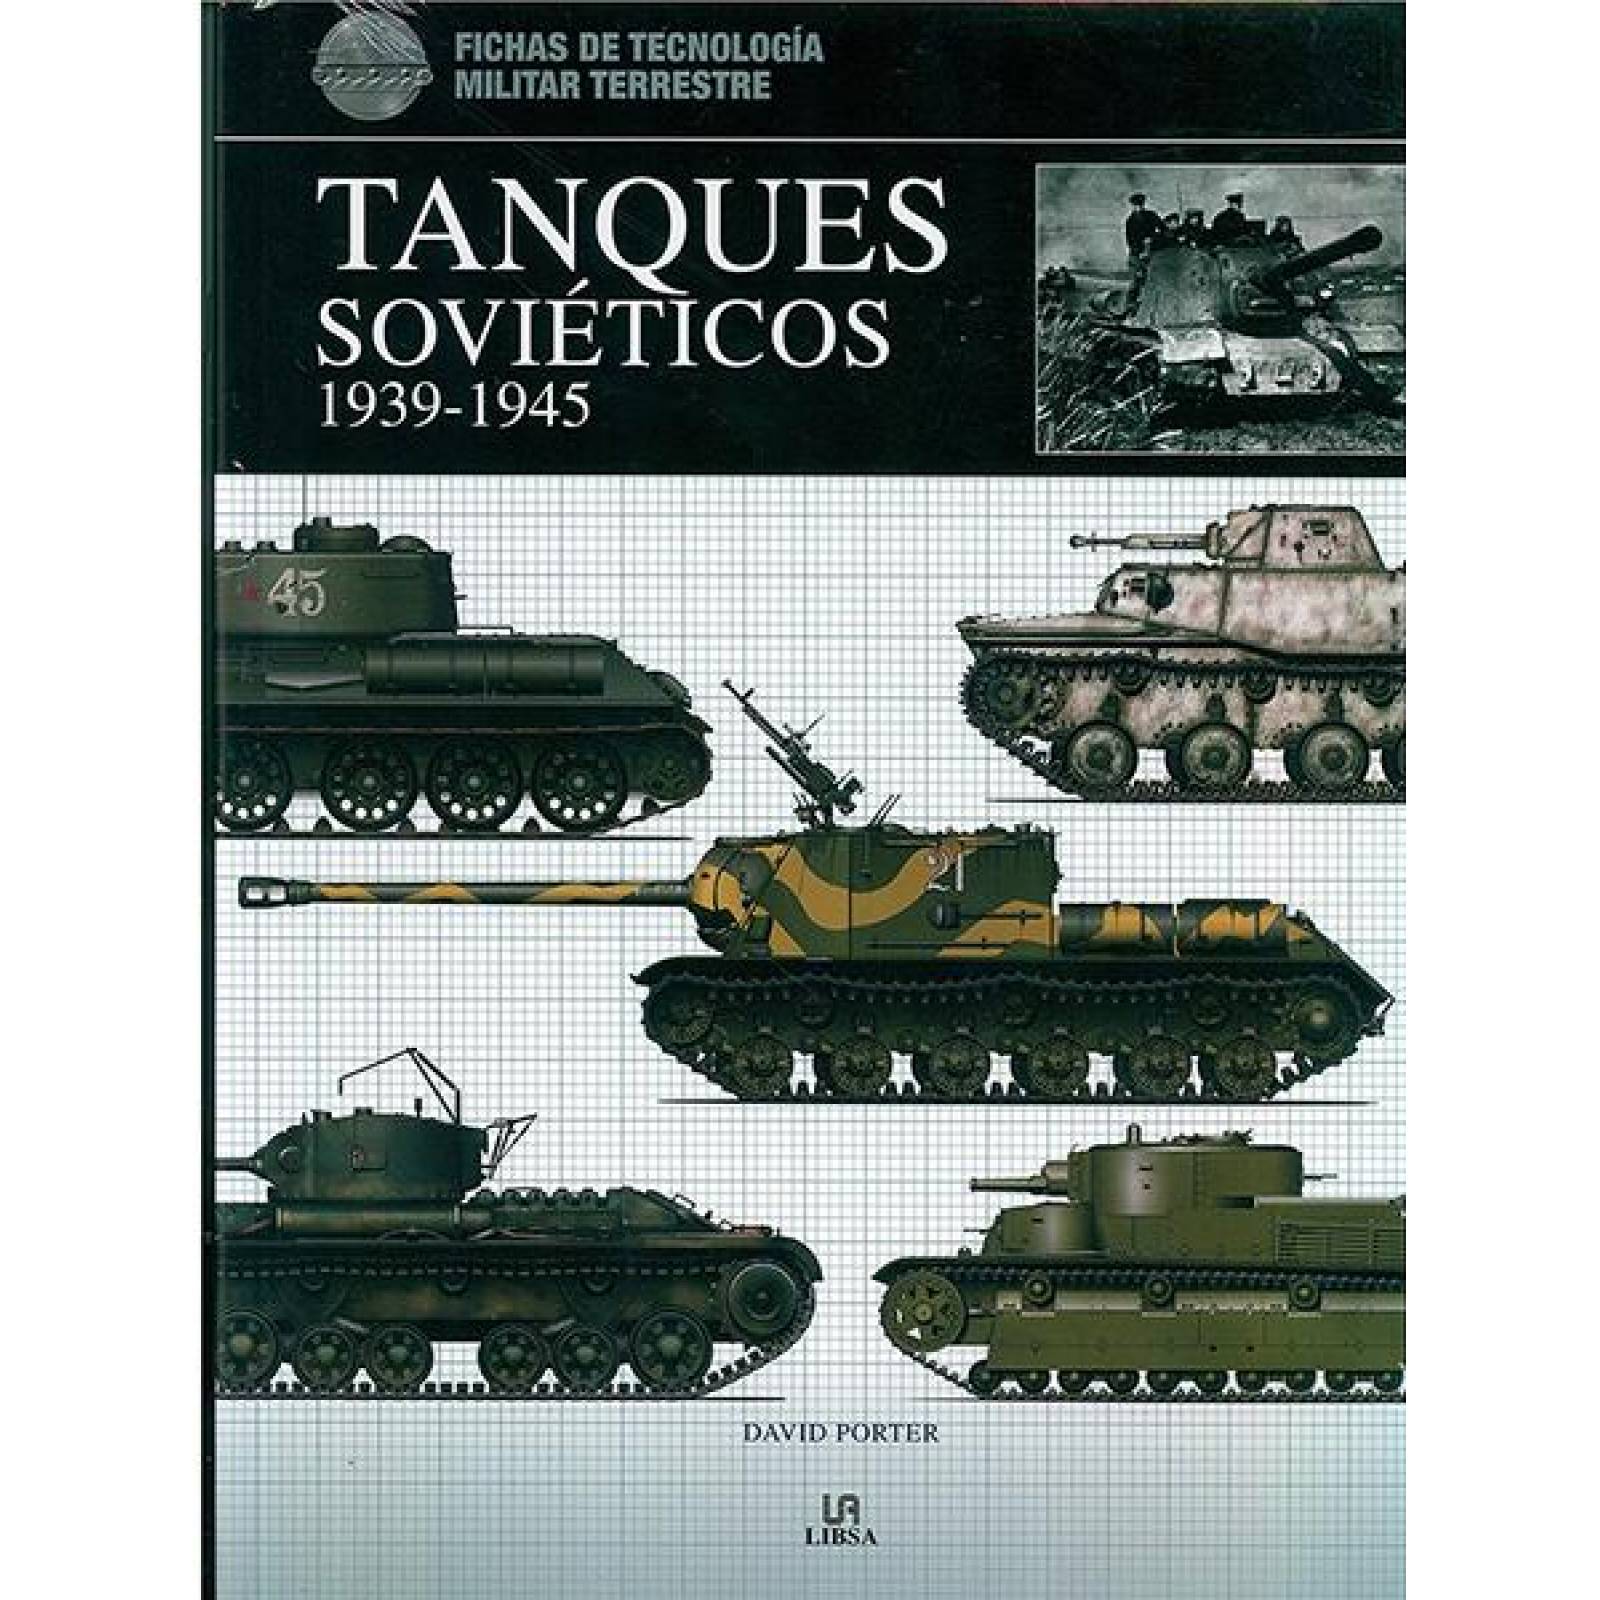 Tanques soviéticos 1939-1945 